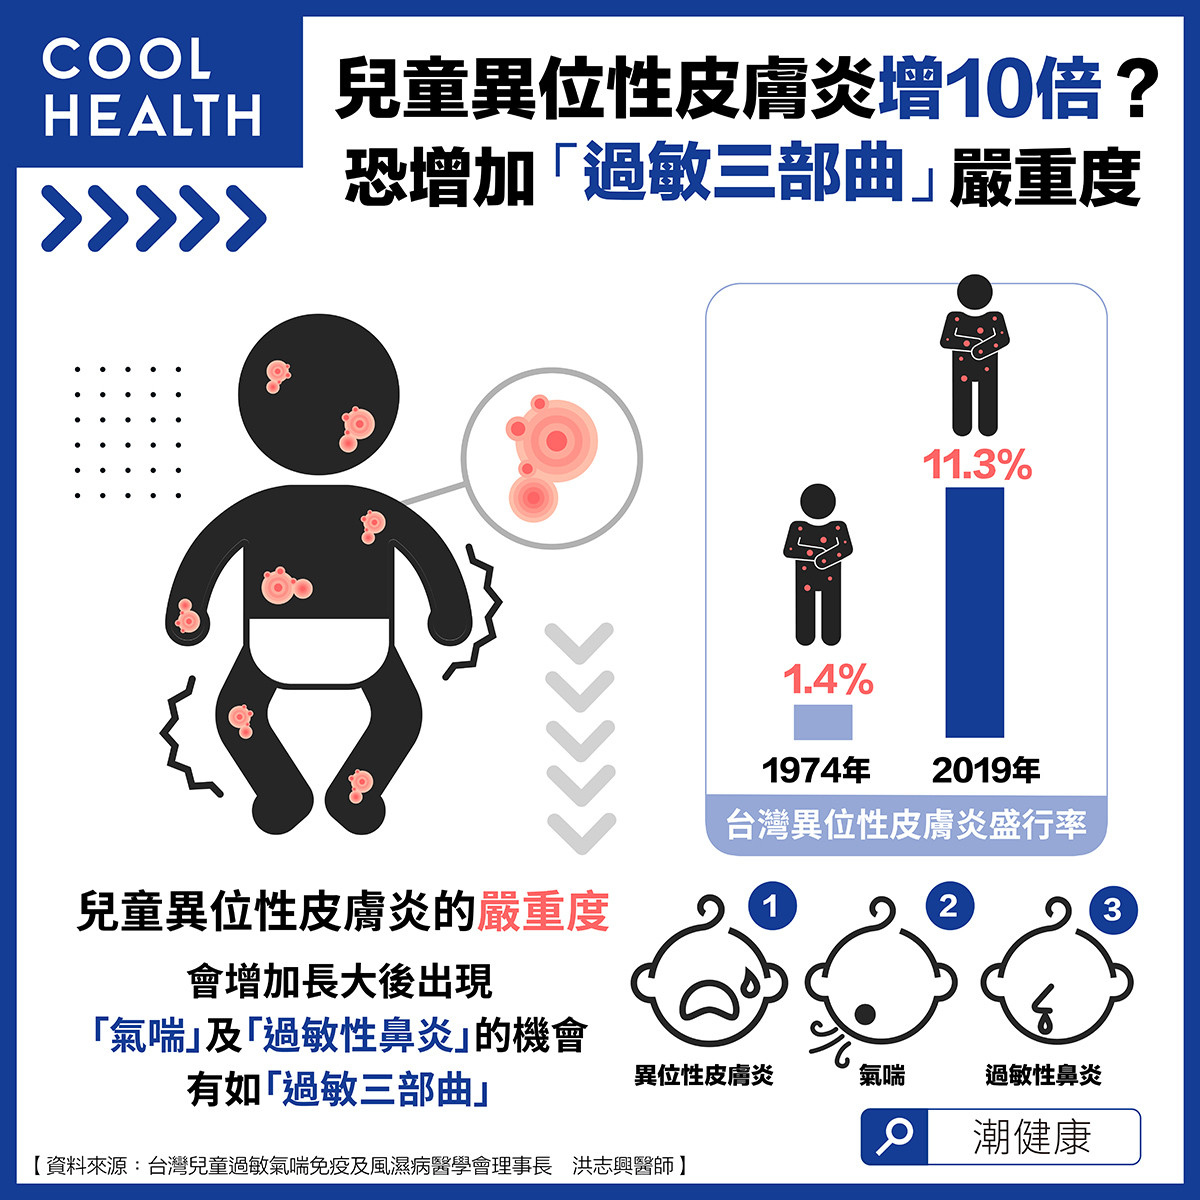 台灣孩童的異位性皮膚炎盛行率在1974年僅為1.4，在2019年時已上升為11.3，但以盛行率而言比例增加近10倍